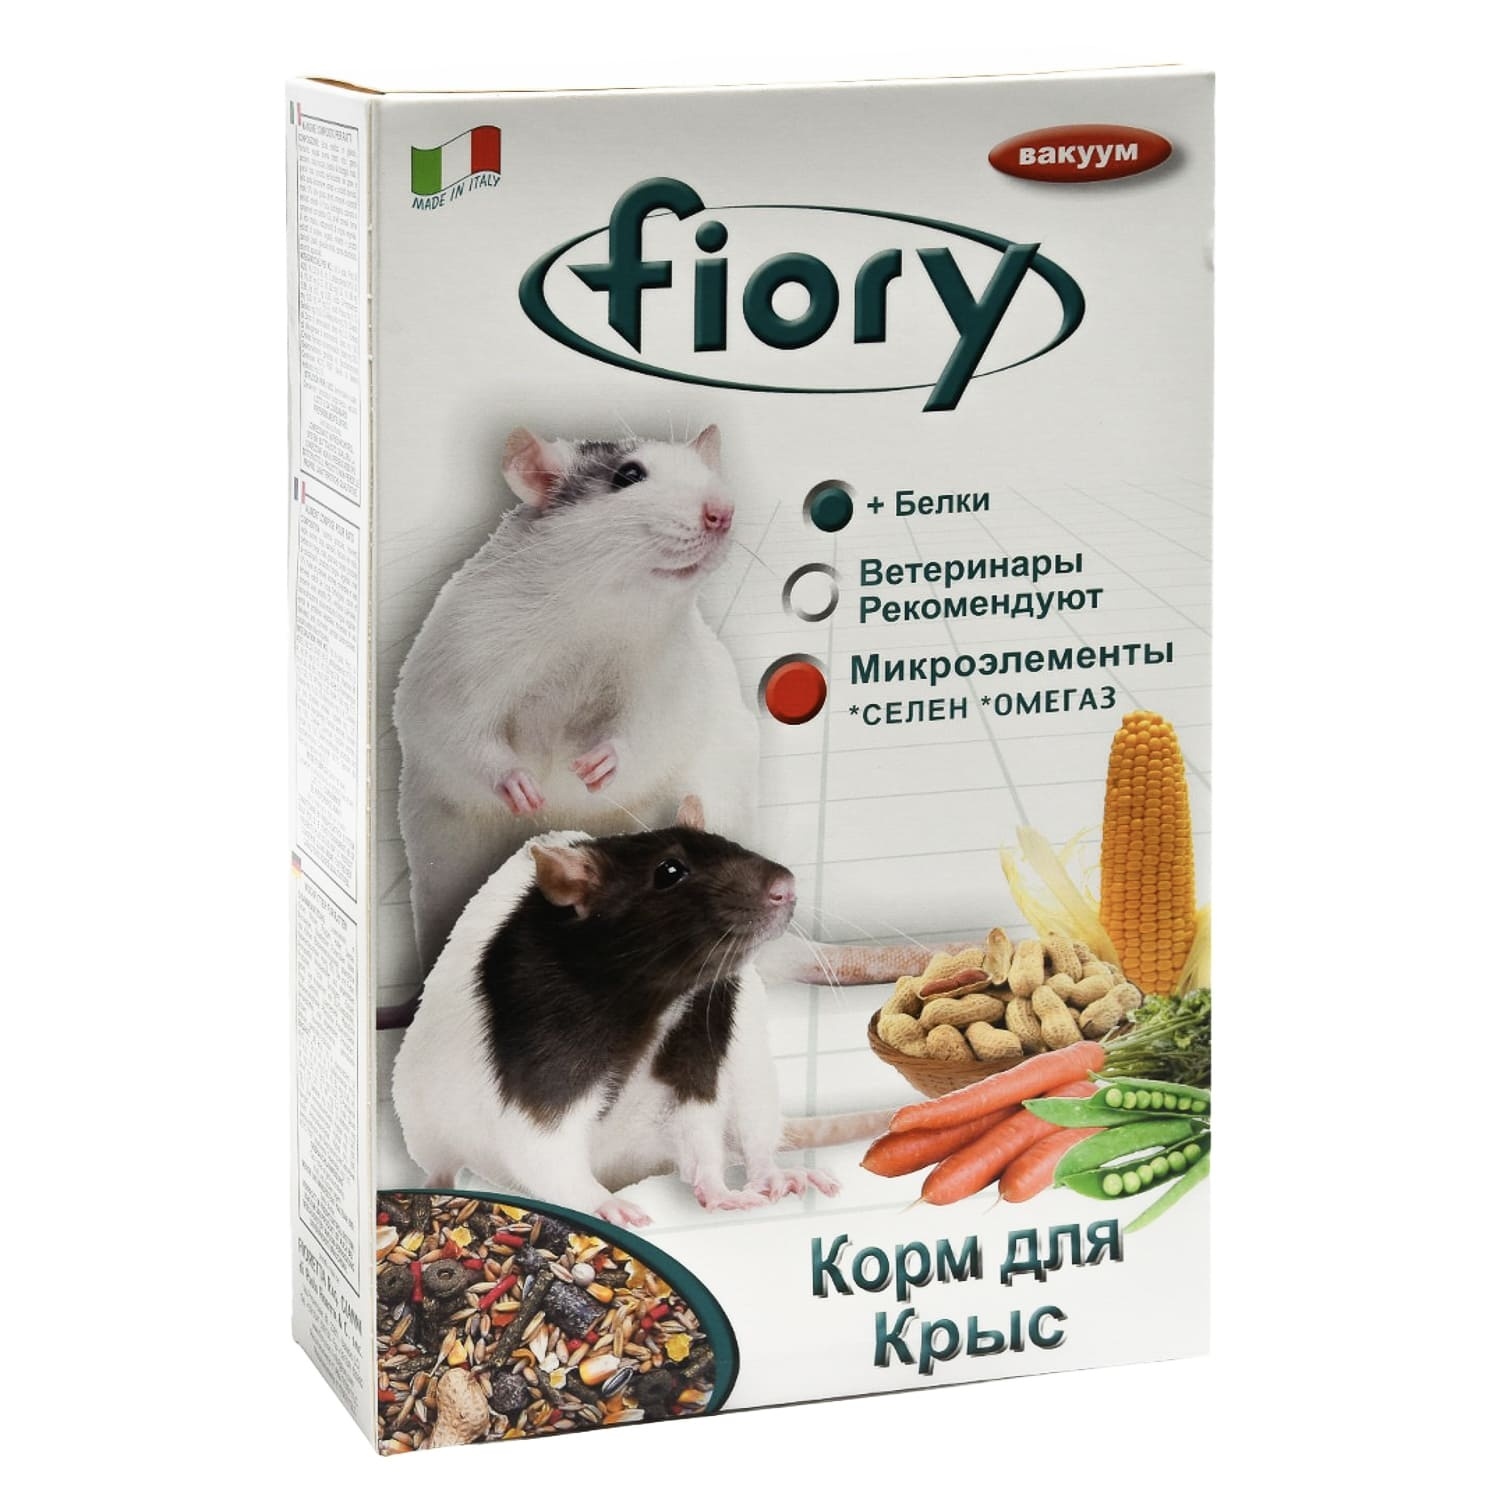 Fiory Fiory корм для крыс (850 г) fiory fiory корм для кроликов гранулированный 850 г